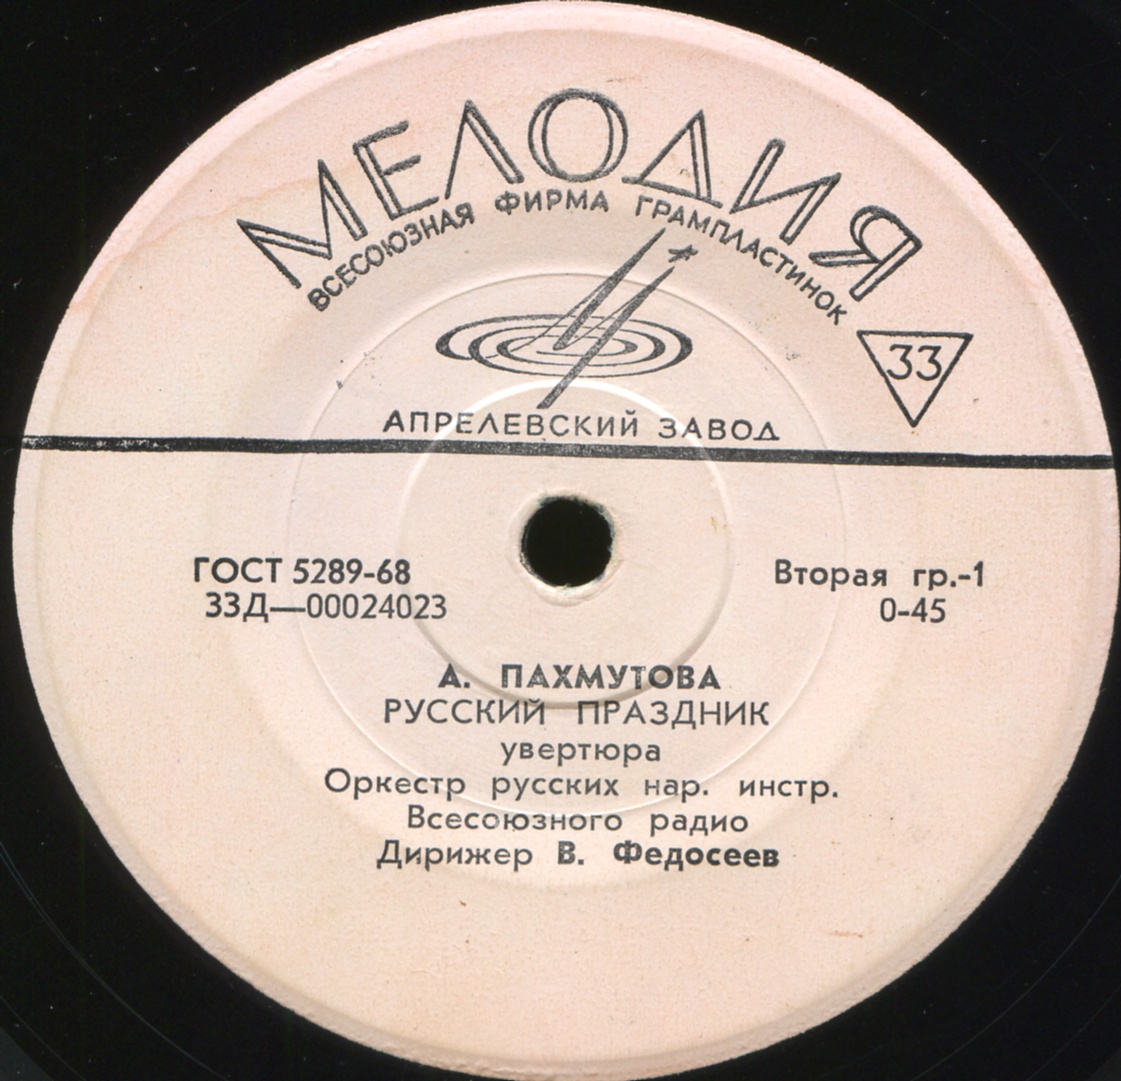 А. ПАХМУТОВА (1929)